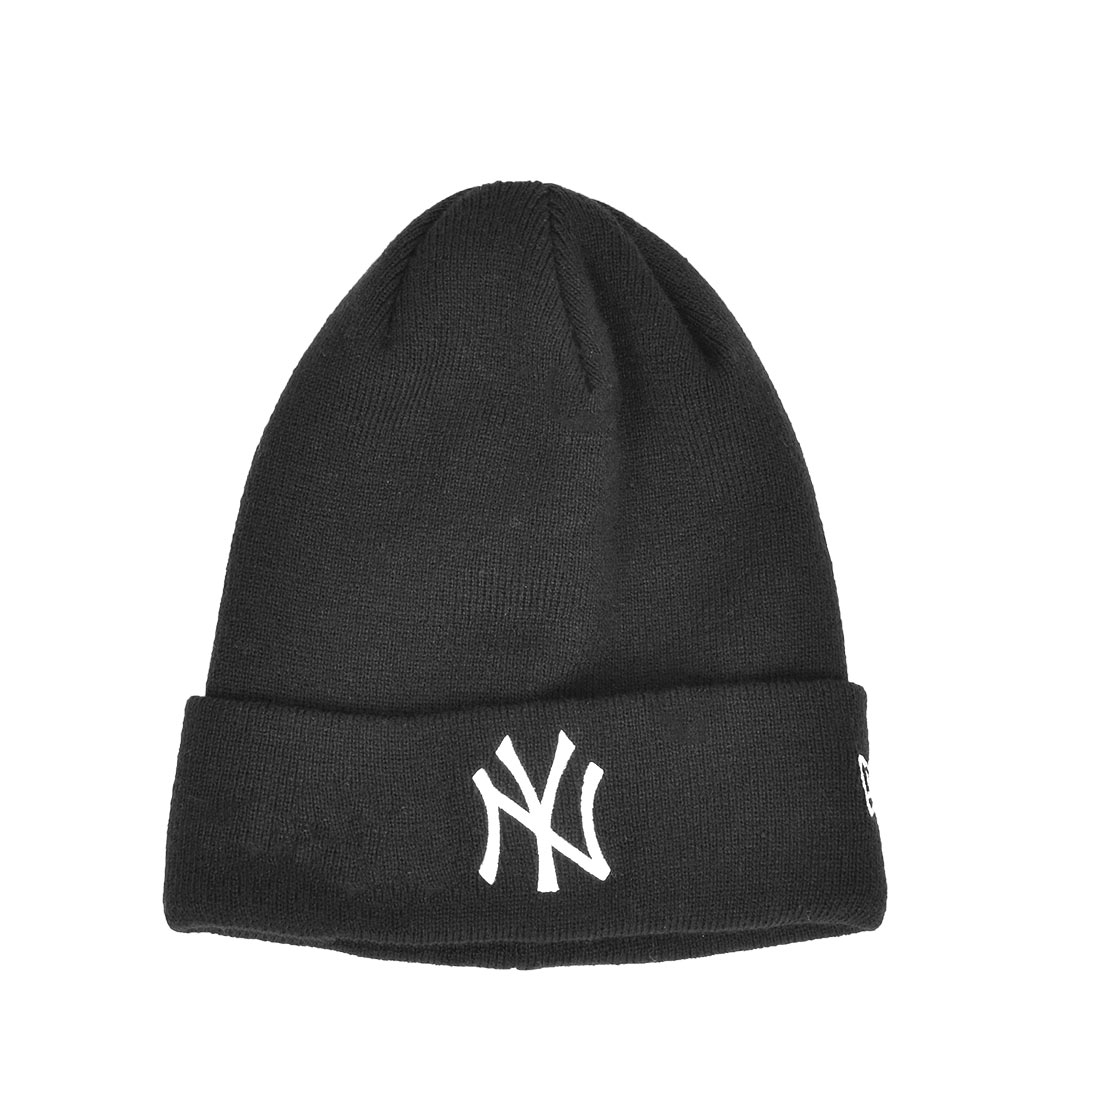 単品価格 ヤンキース ニットキャップ ビーニ ny 帽子 Yankees